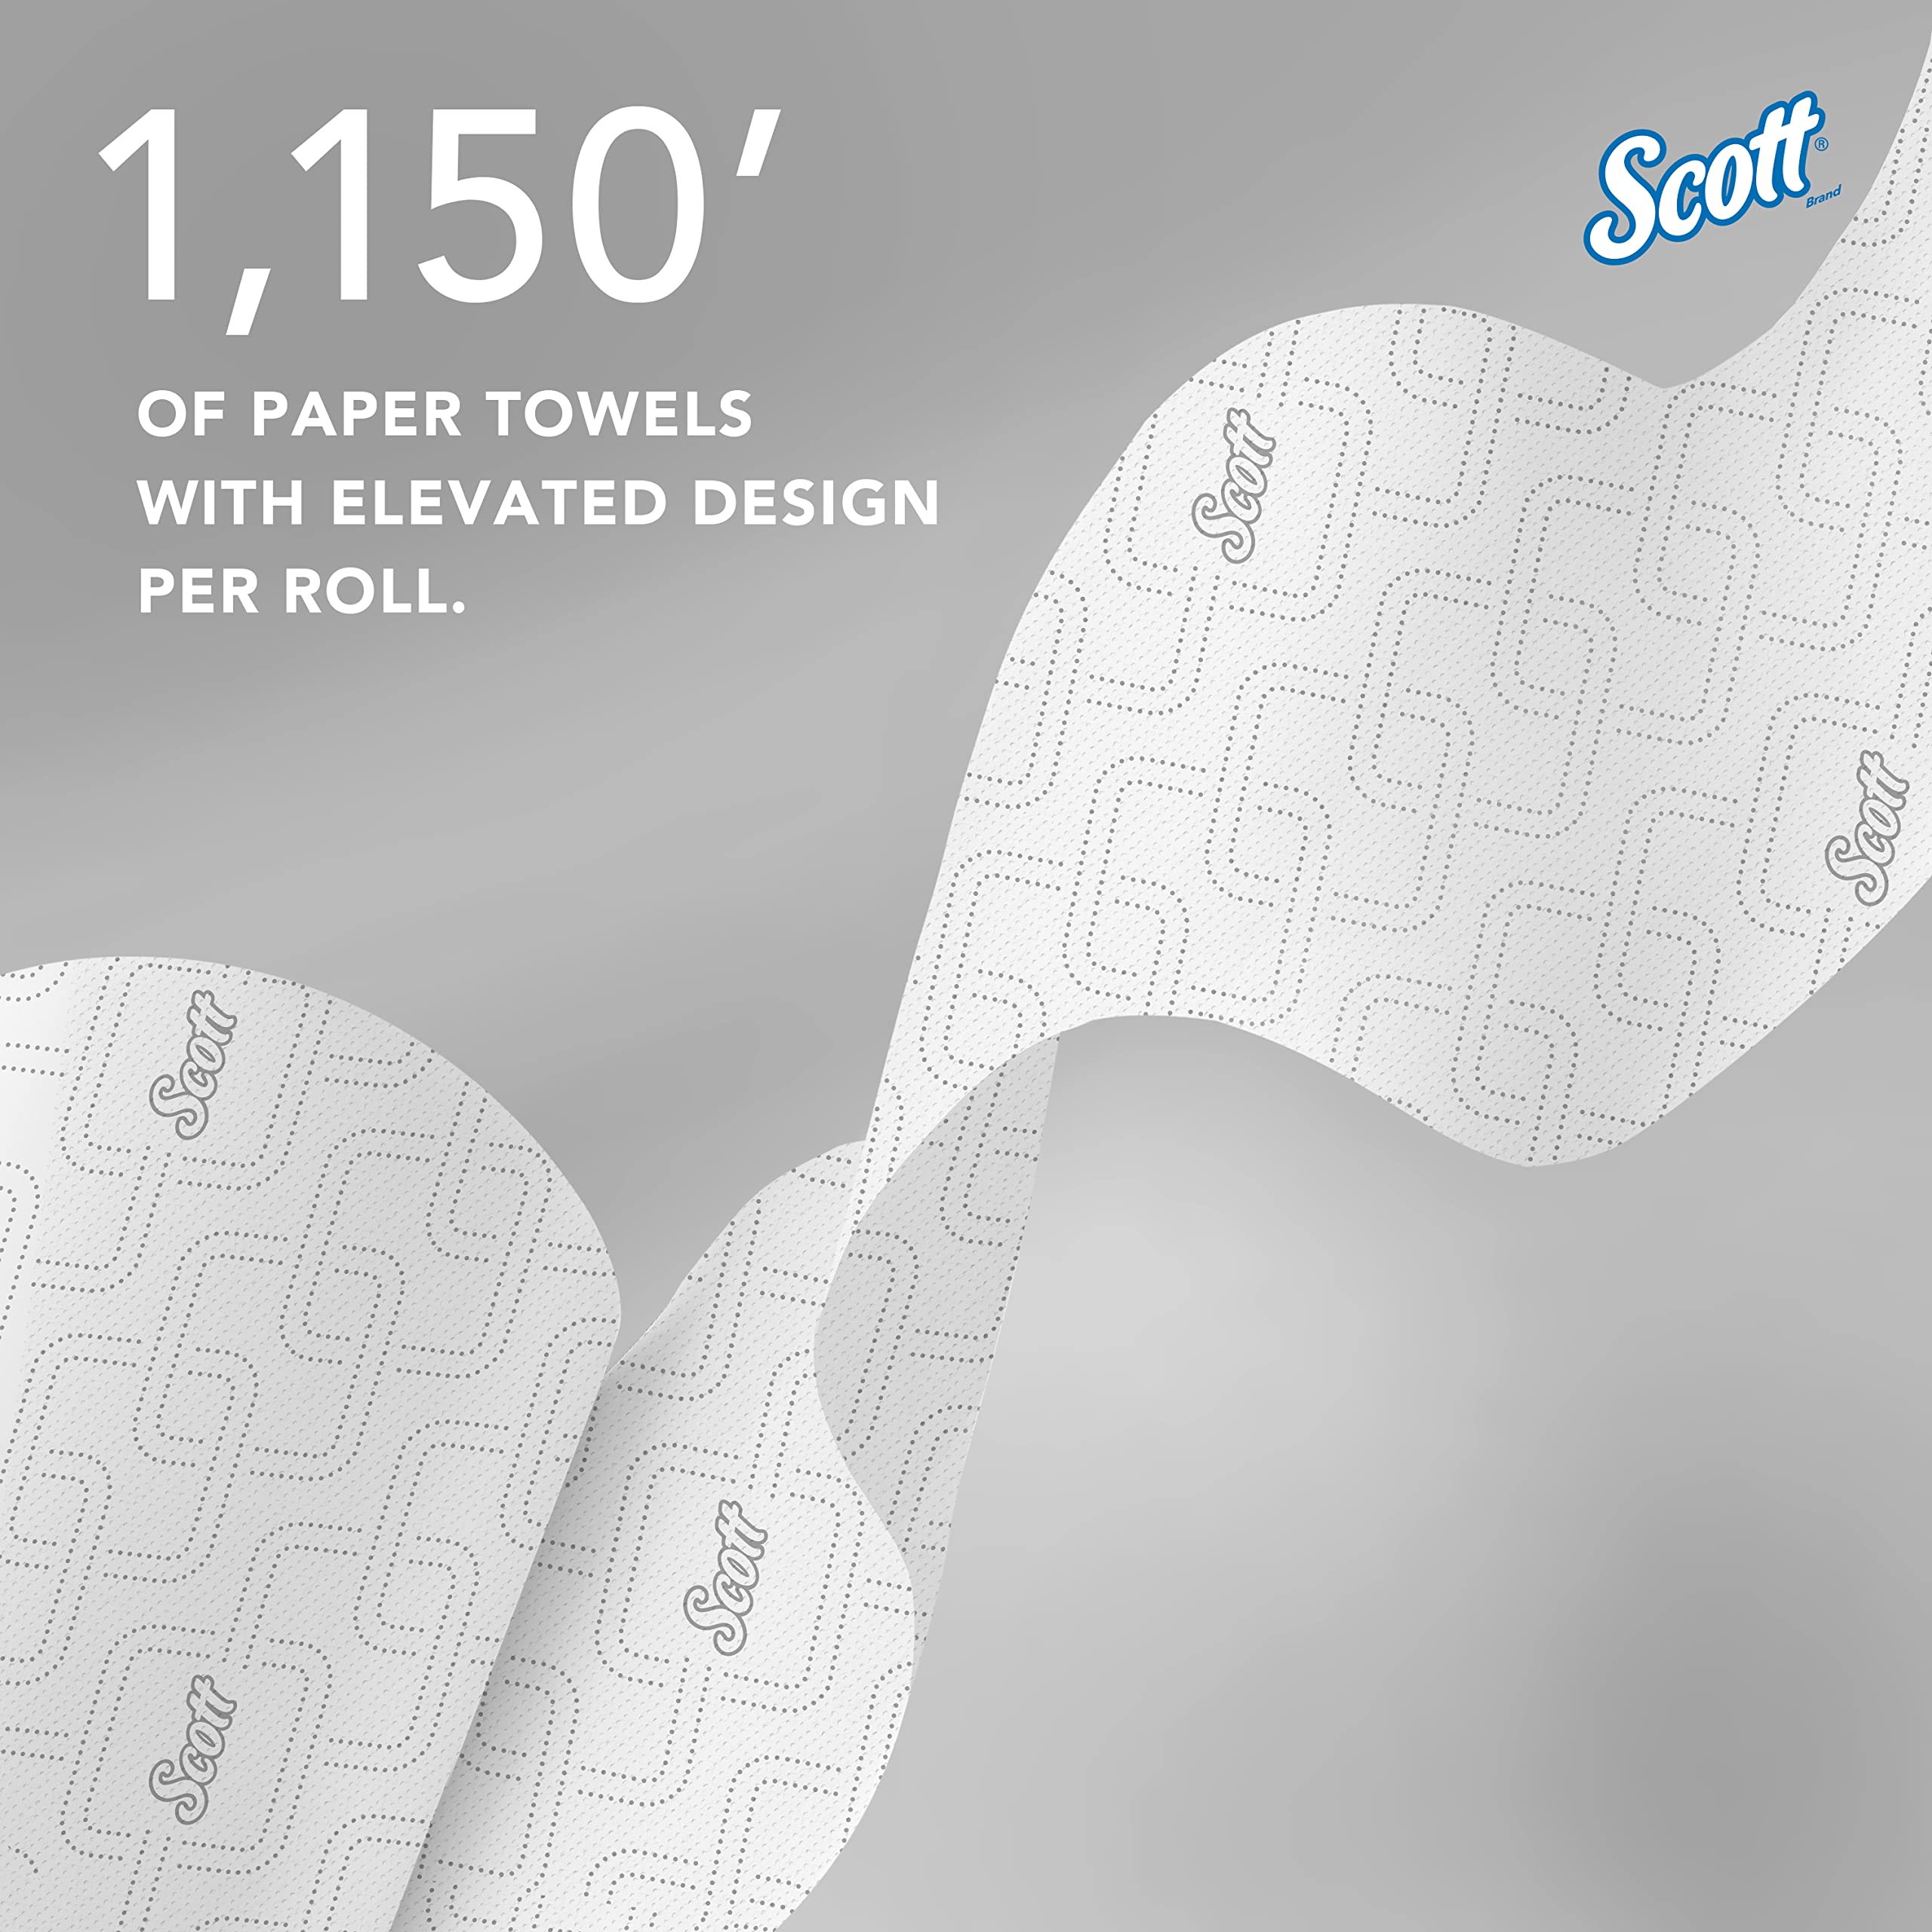 Scott Pro Hard Roll Paper Towels (25702) for Scott Pro Dispenser (Blue Core Only), Absorbency Pockets, White, 1150'/Roll, 6 Rolls/Case, 6,900'/Case